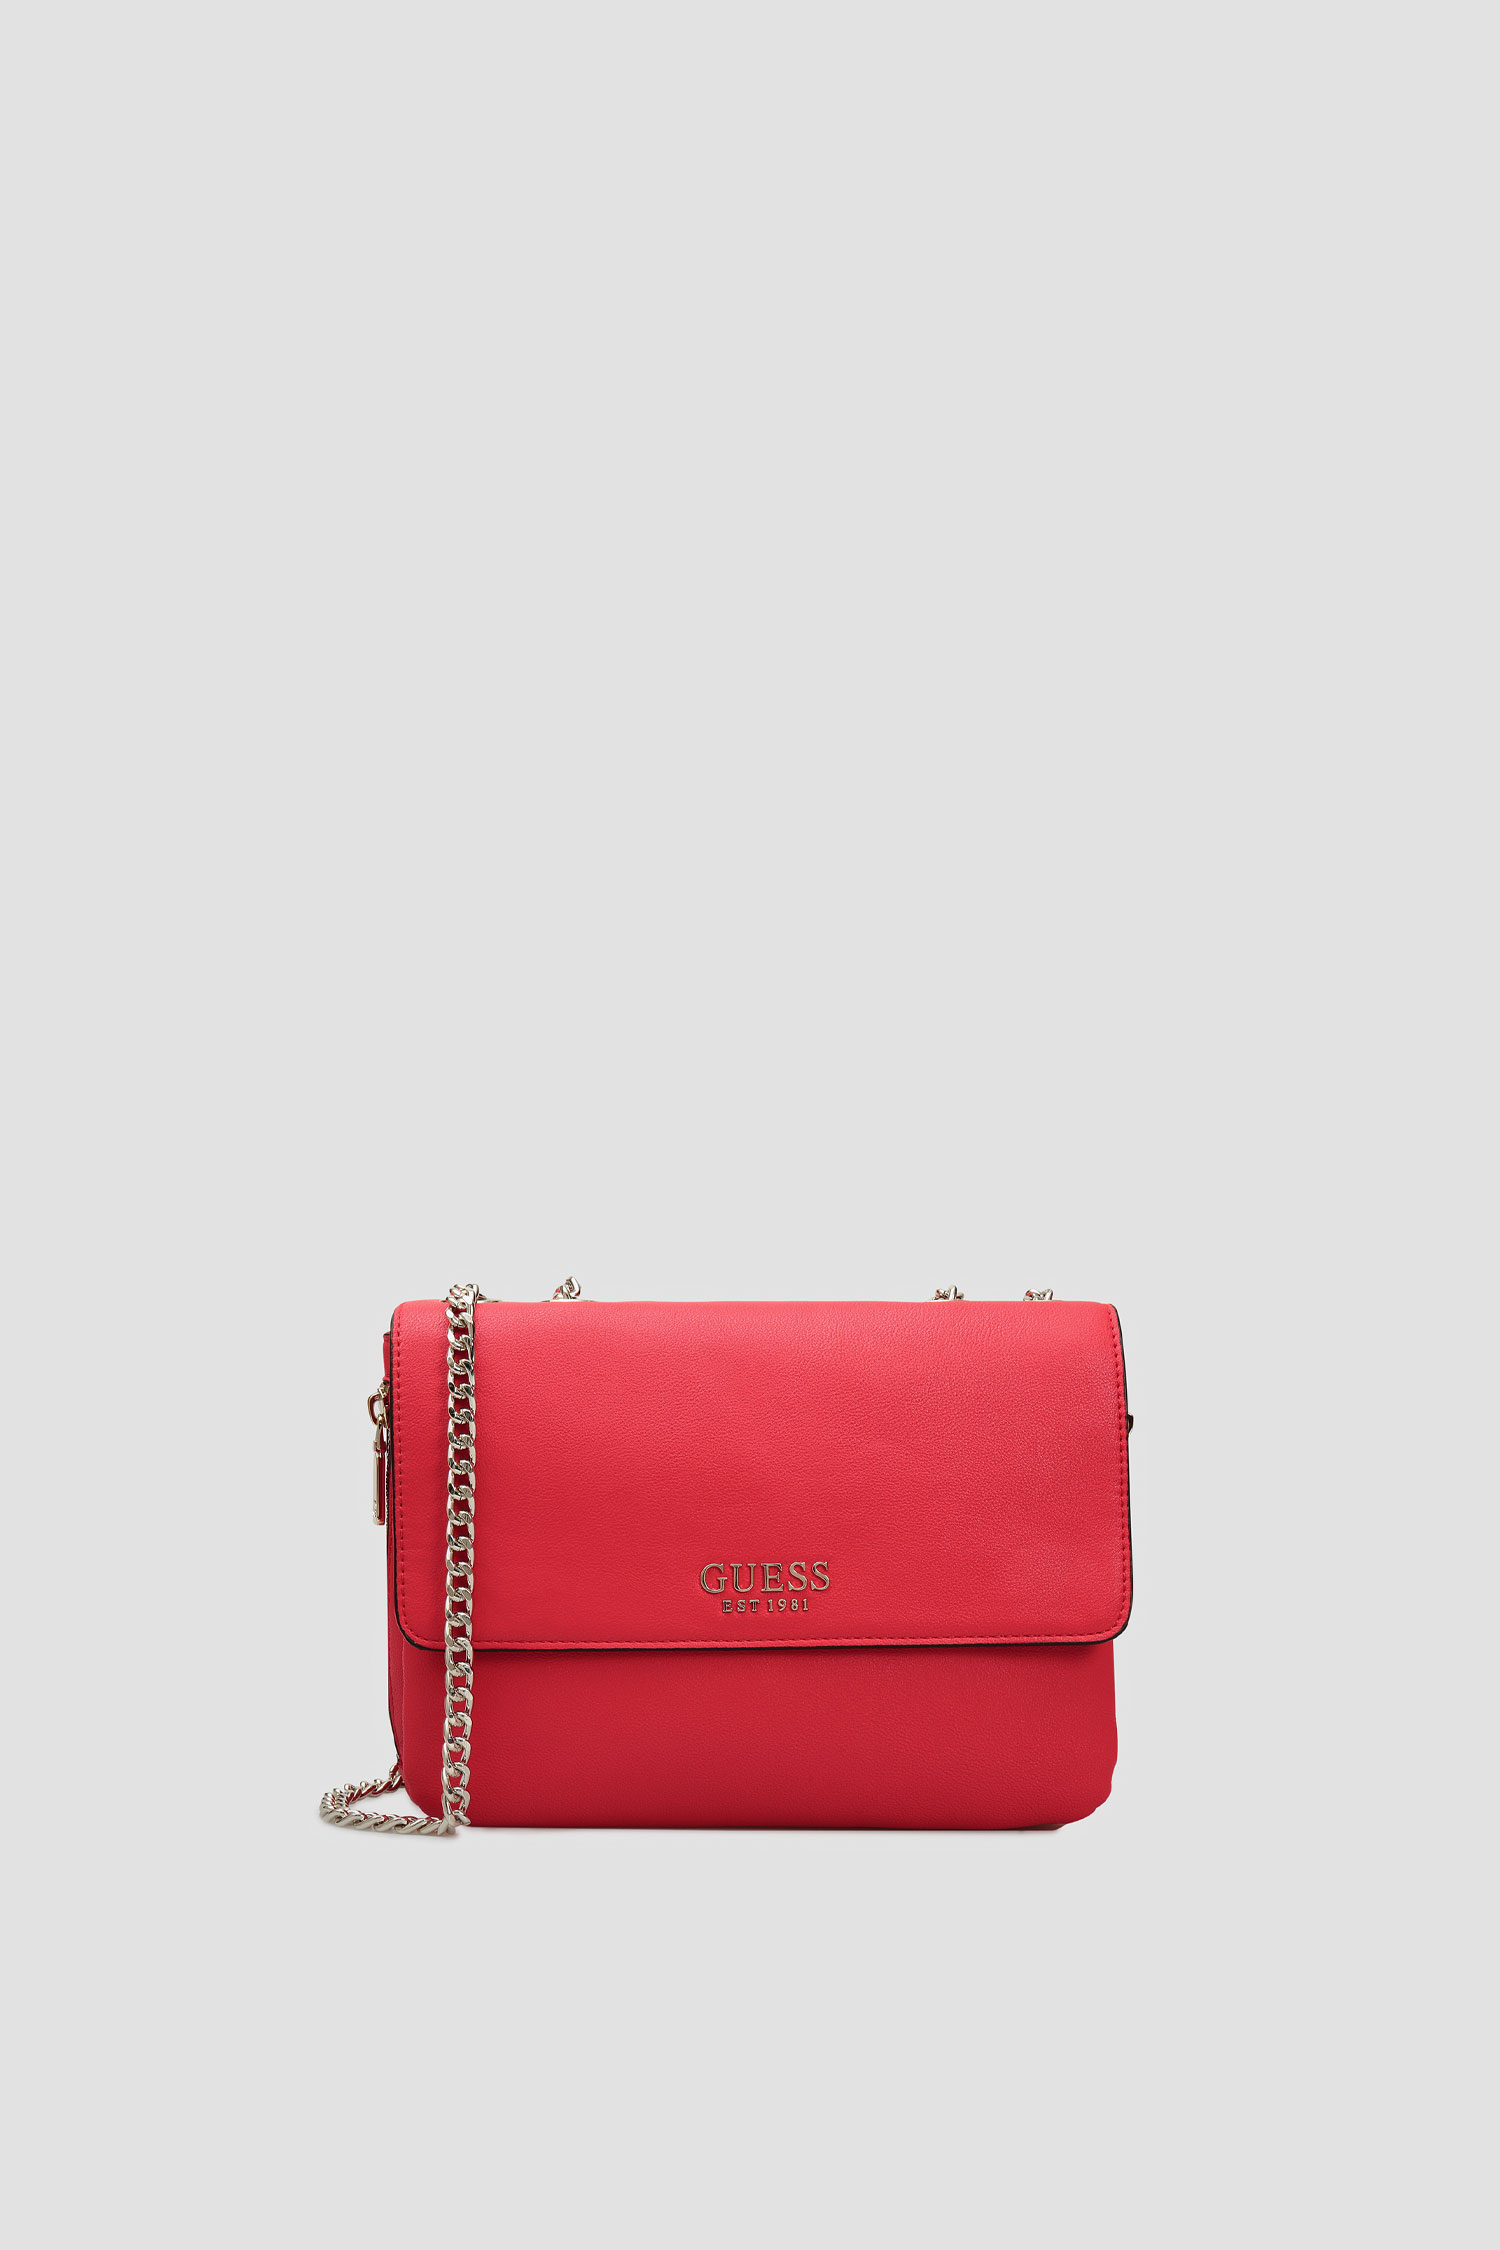 Красная сумка для девушек Guess HWRG77.39210;RED